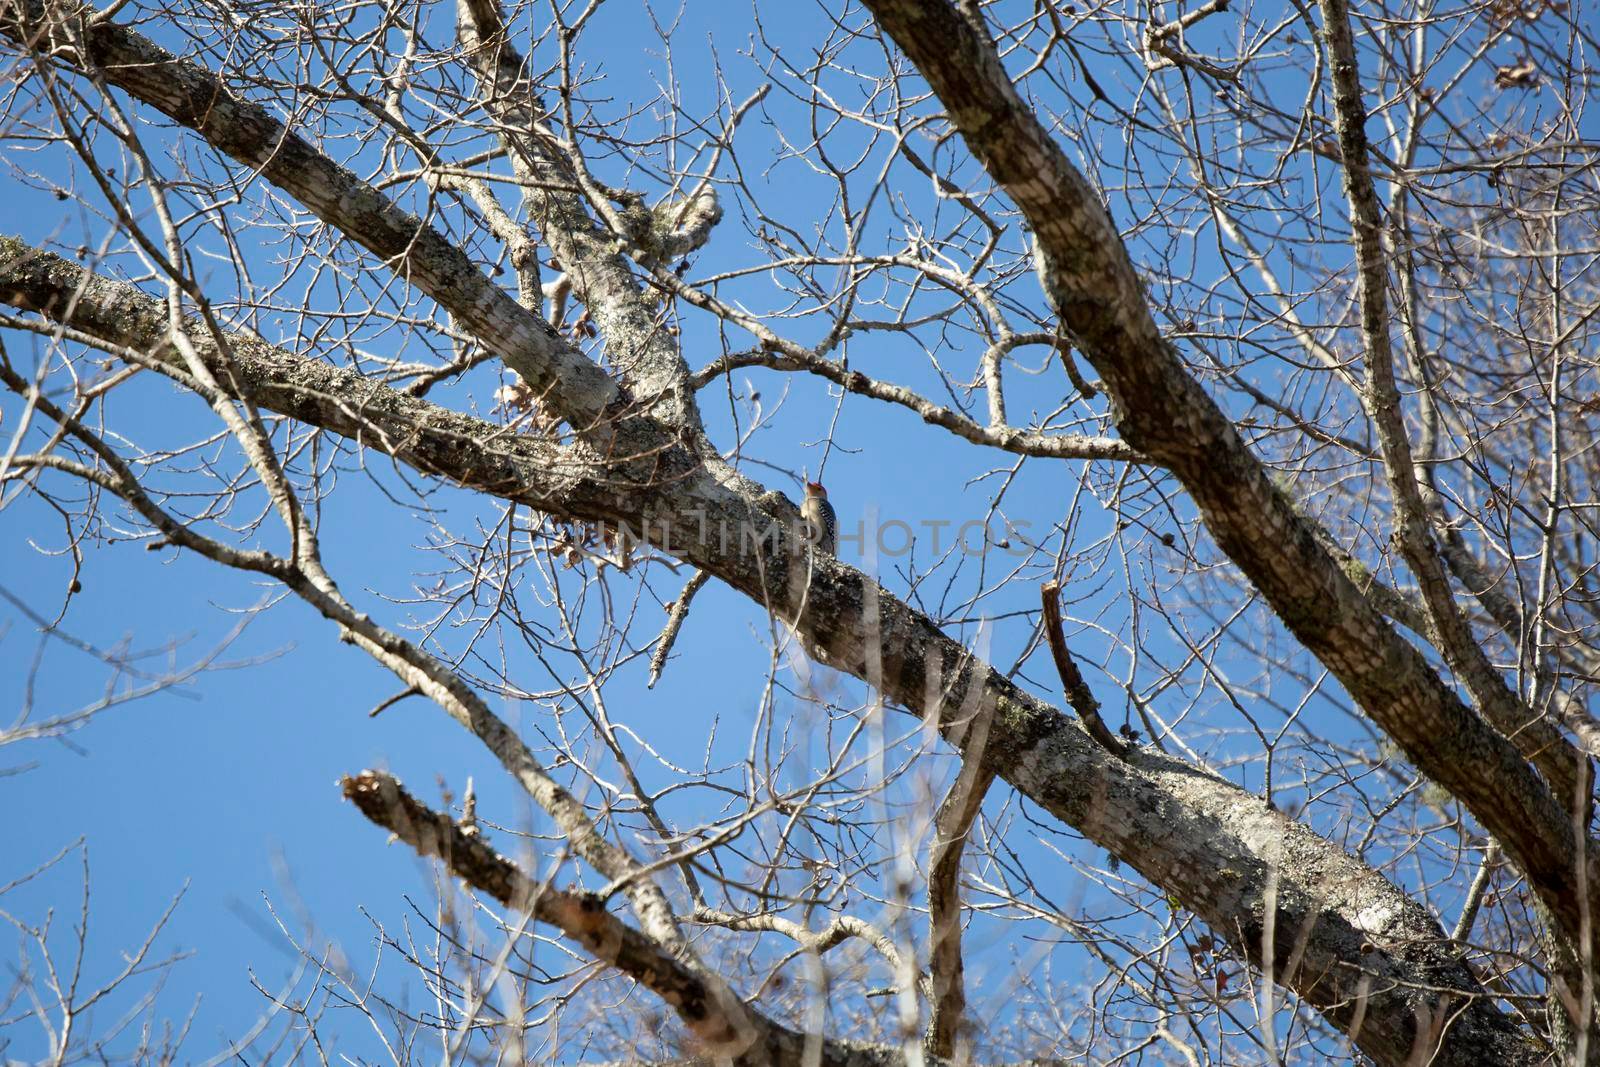 Red-Bellied Woodpecker on a Tree by tornado98